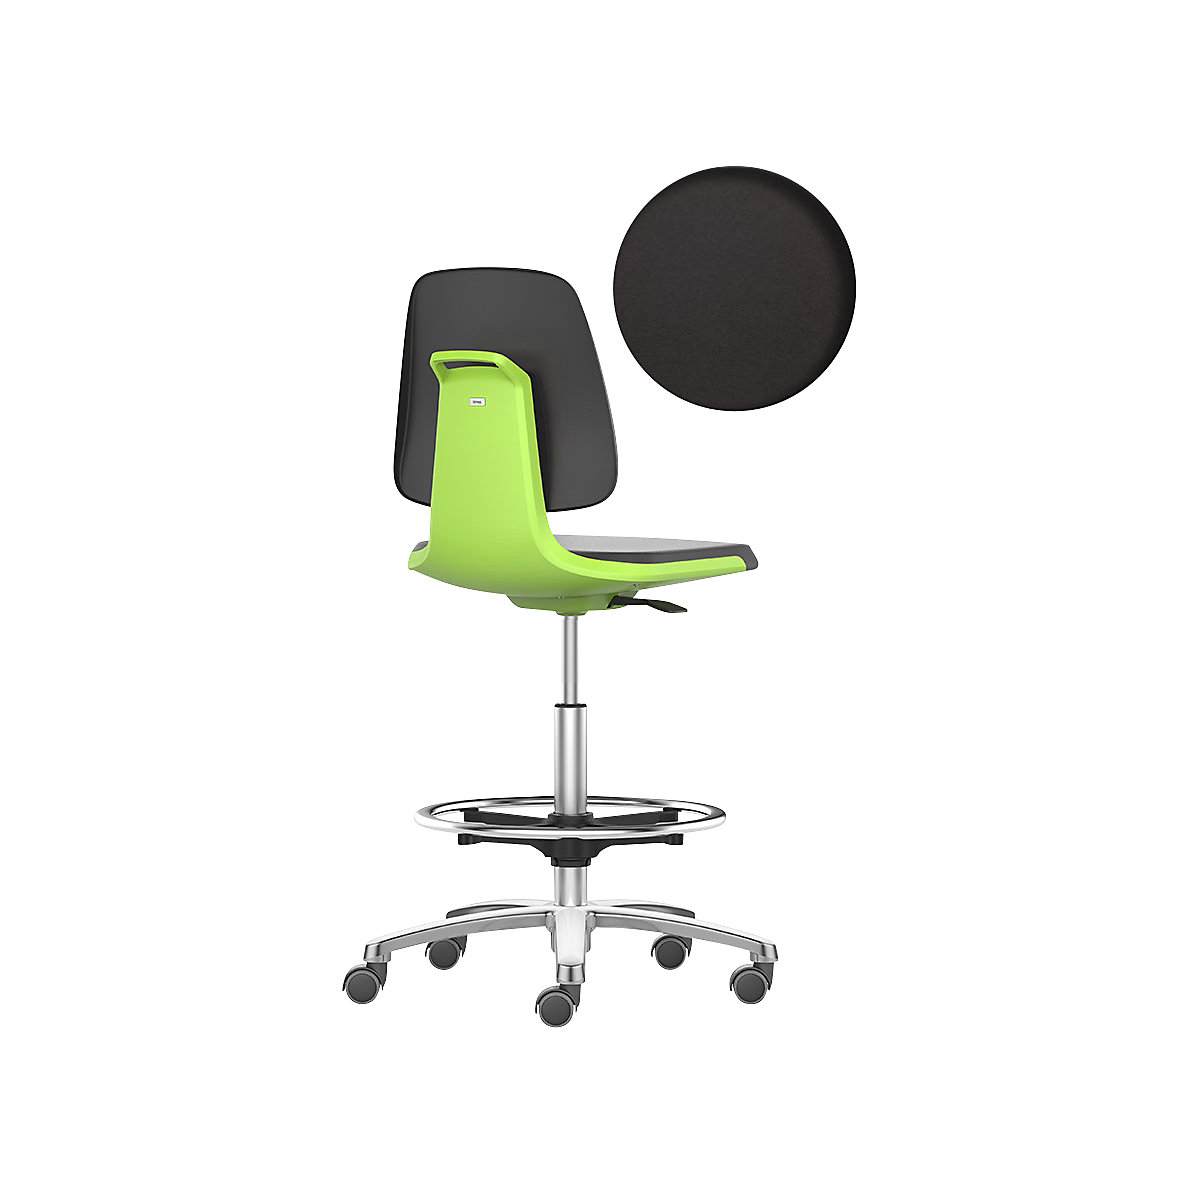 Arbeitsdrehstuhl LABSIT bimos, Hochstuhl mit Sitz-Stopp-Rollen und Fußring, Sitz aus PU-Schaum, grün-27